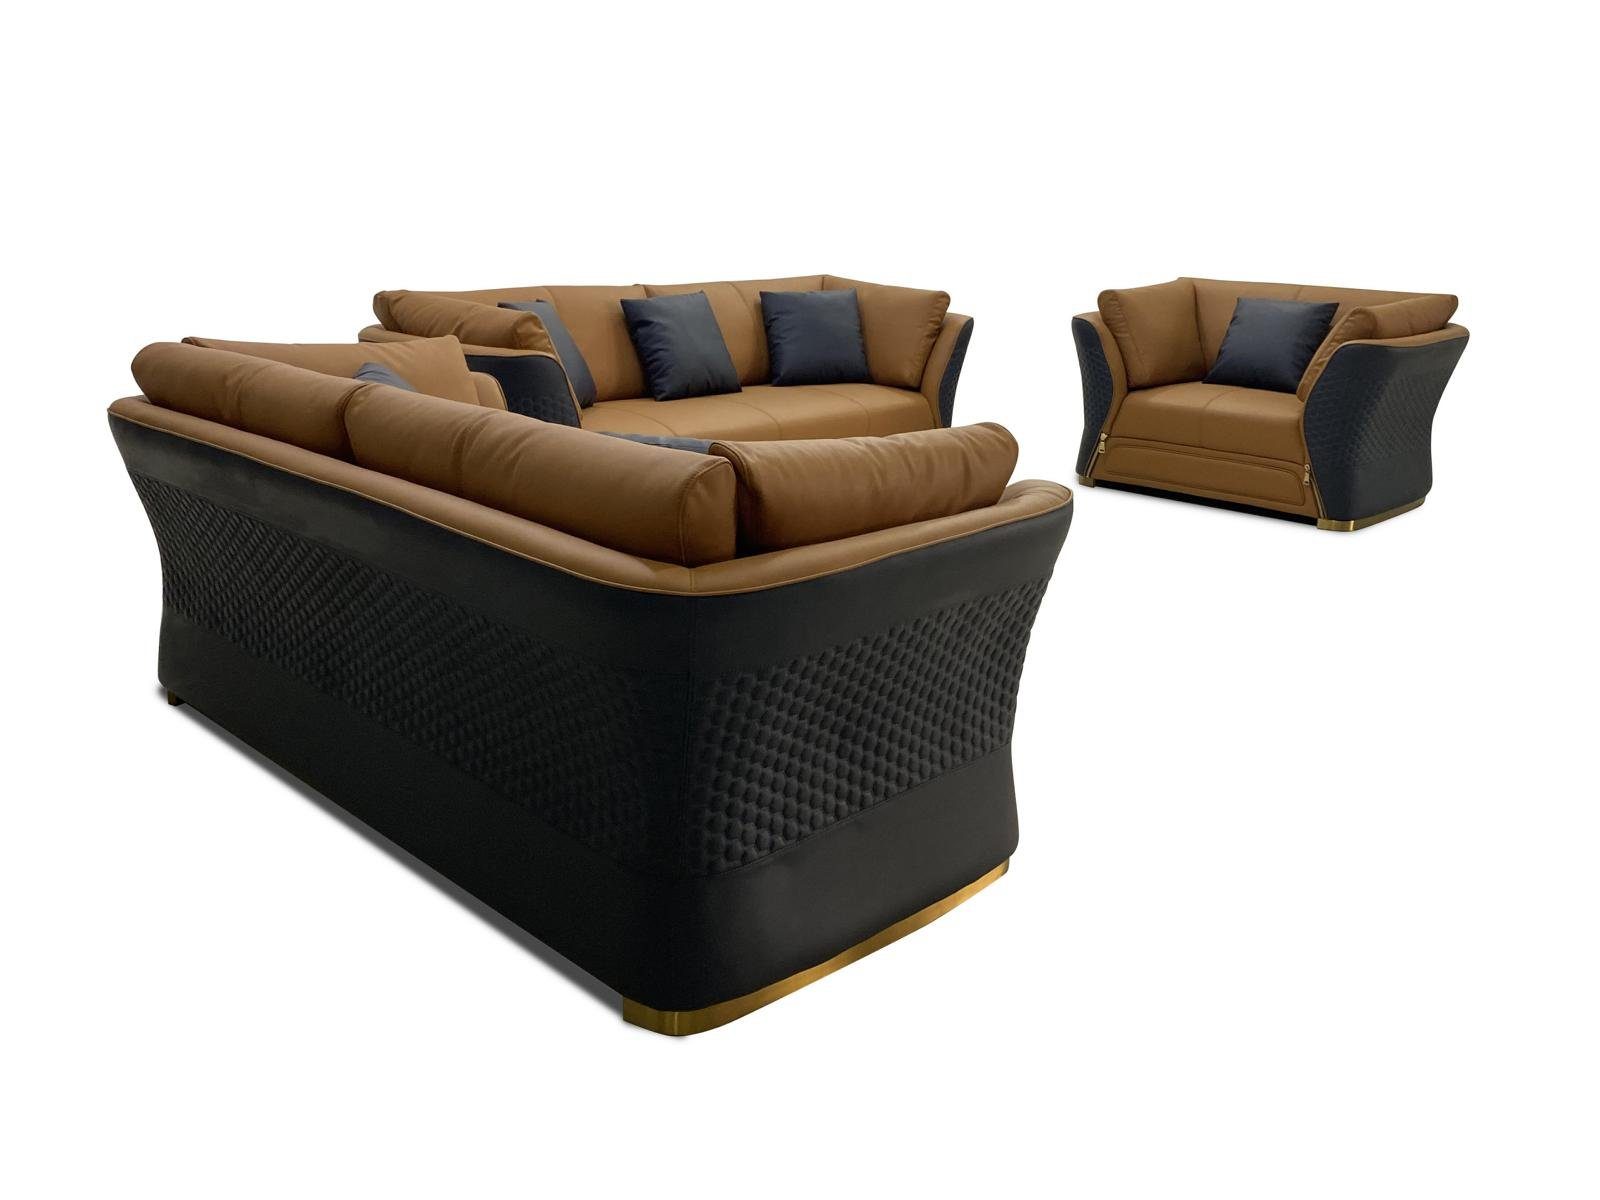 JVmoebel Wohnzimmer-Set, Sofagarnitur 3 1 Sitzer Braun/Schwarz Design Couch Sofa Polster Set Couchen Modern